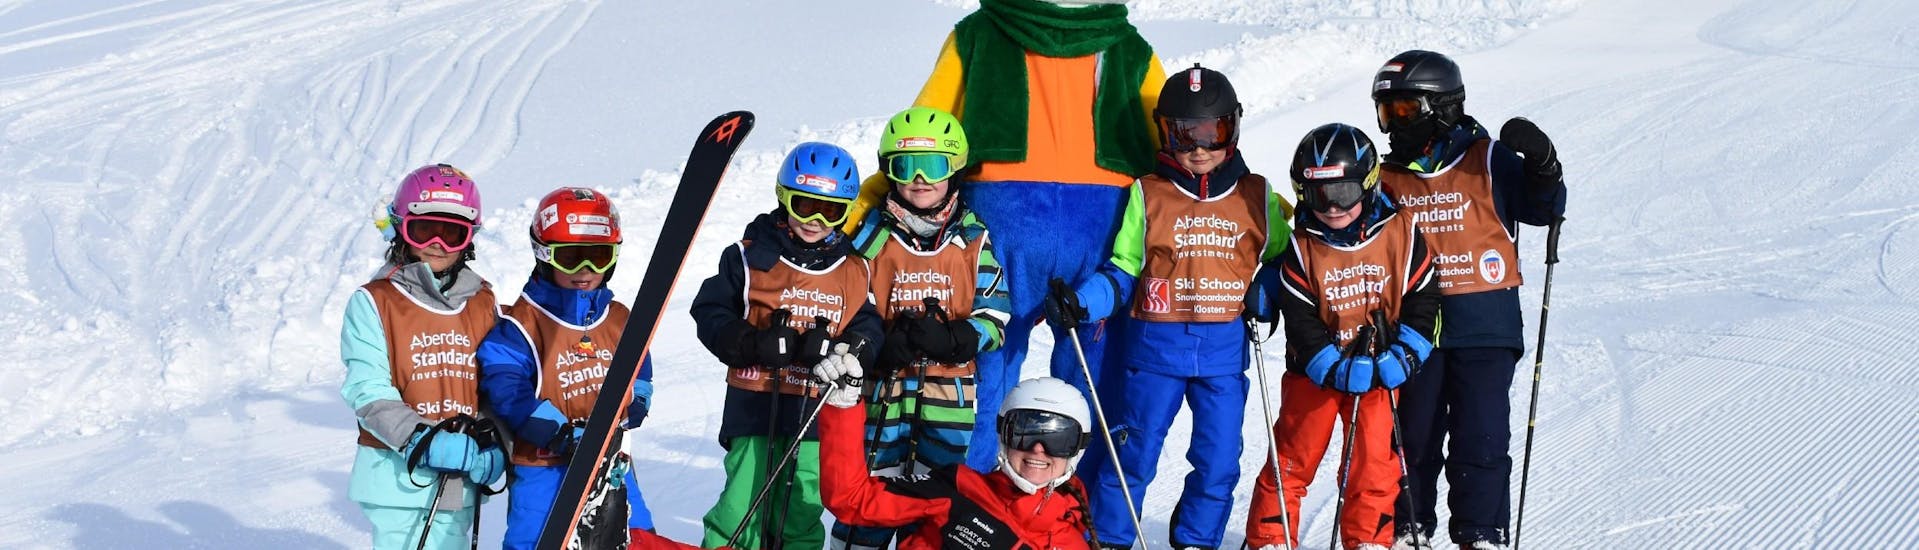 Skilessen voor kinderen (vanaf 3 jaar) voor beginners.